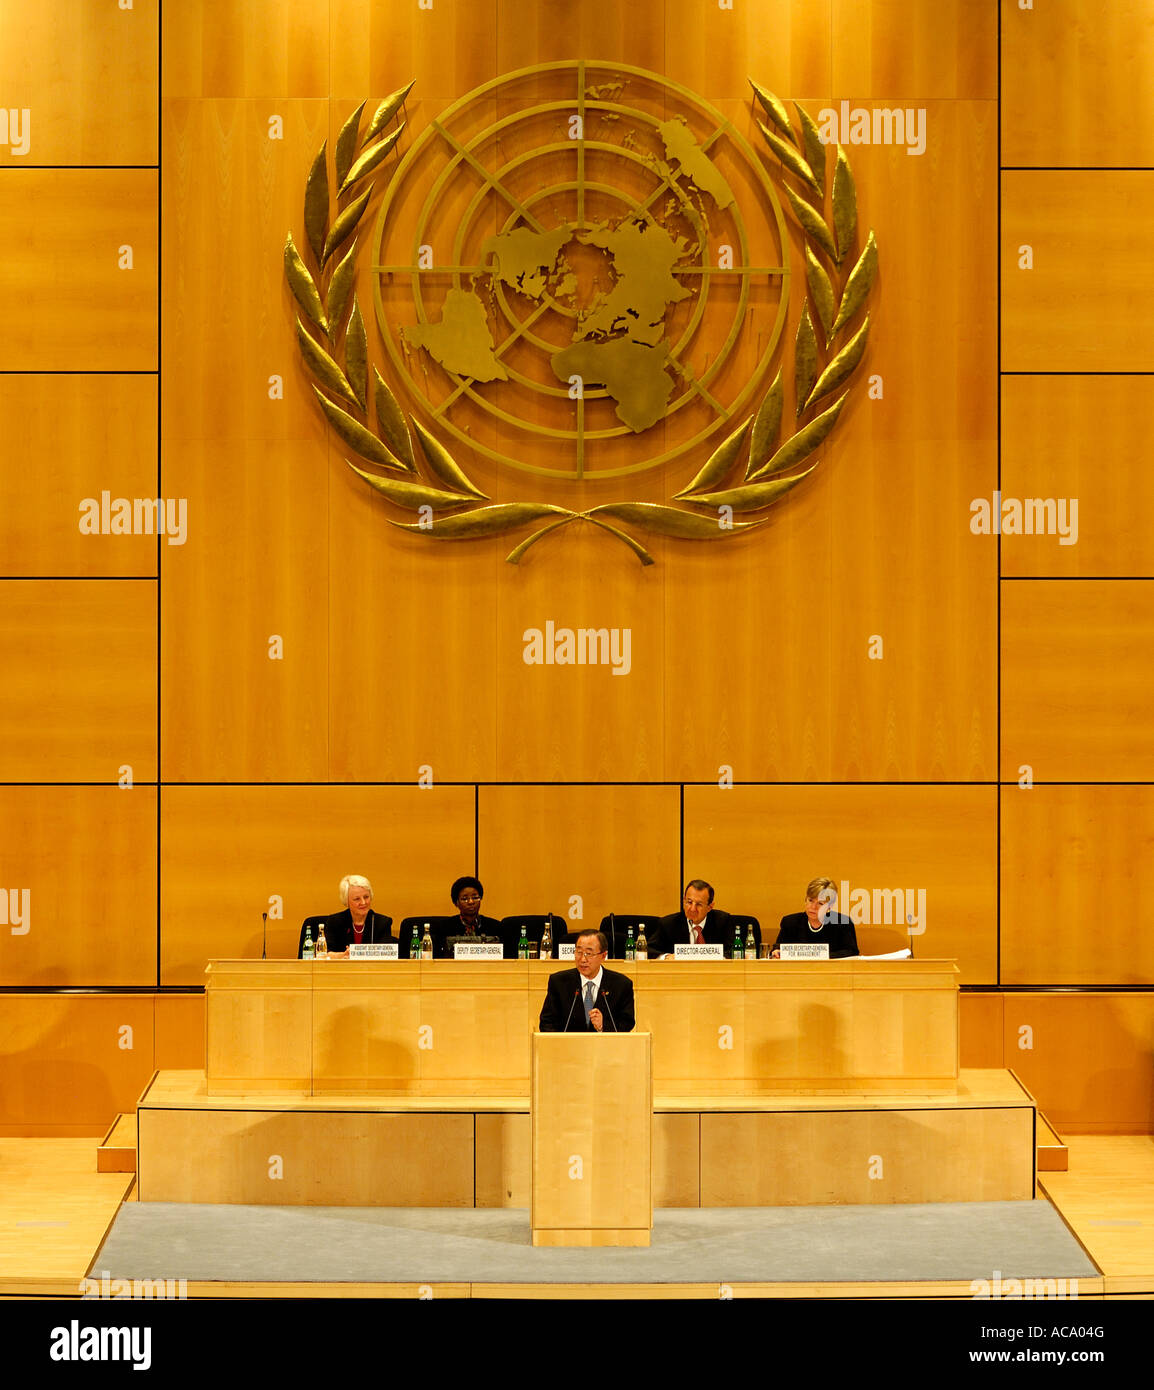 Il Segretario Generale delle Nazioni Unite Ban Ki-moon e i membri del suo gabinetto, f.r.t.l. Assistente del Segretario generale, Ufficio per i Diritti Umani Foto Stock